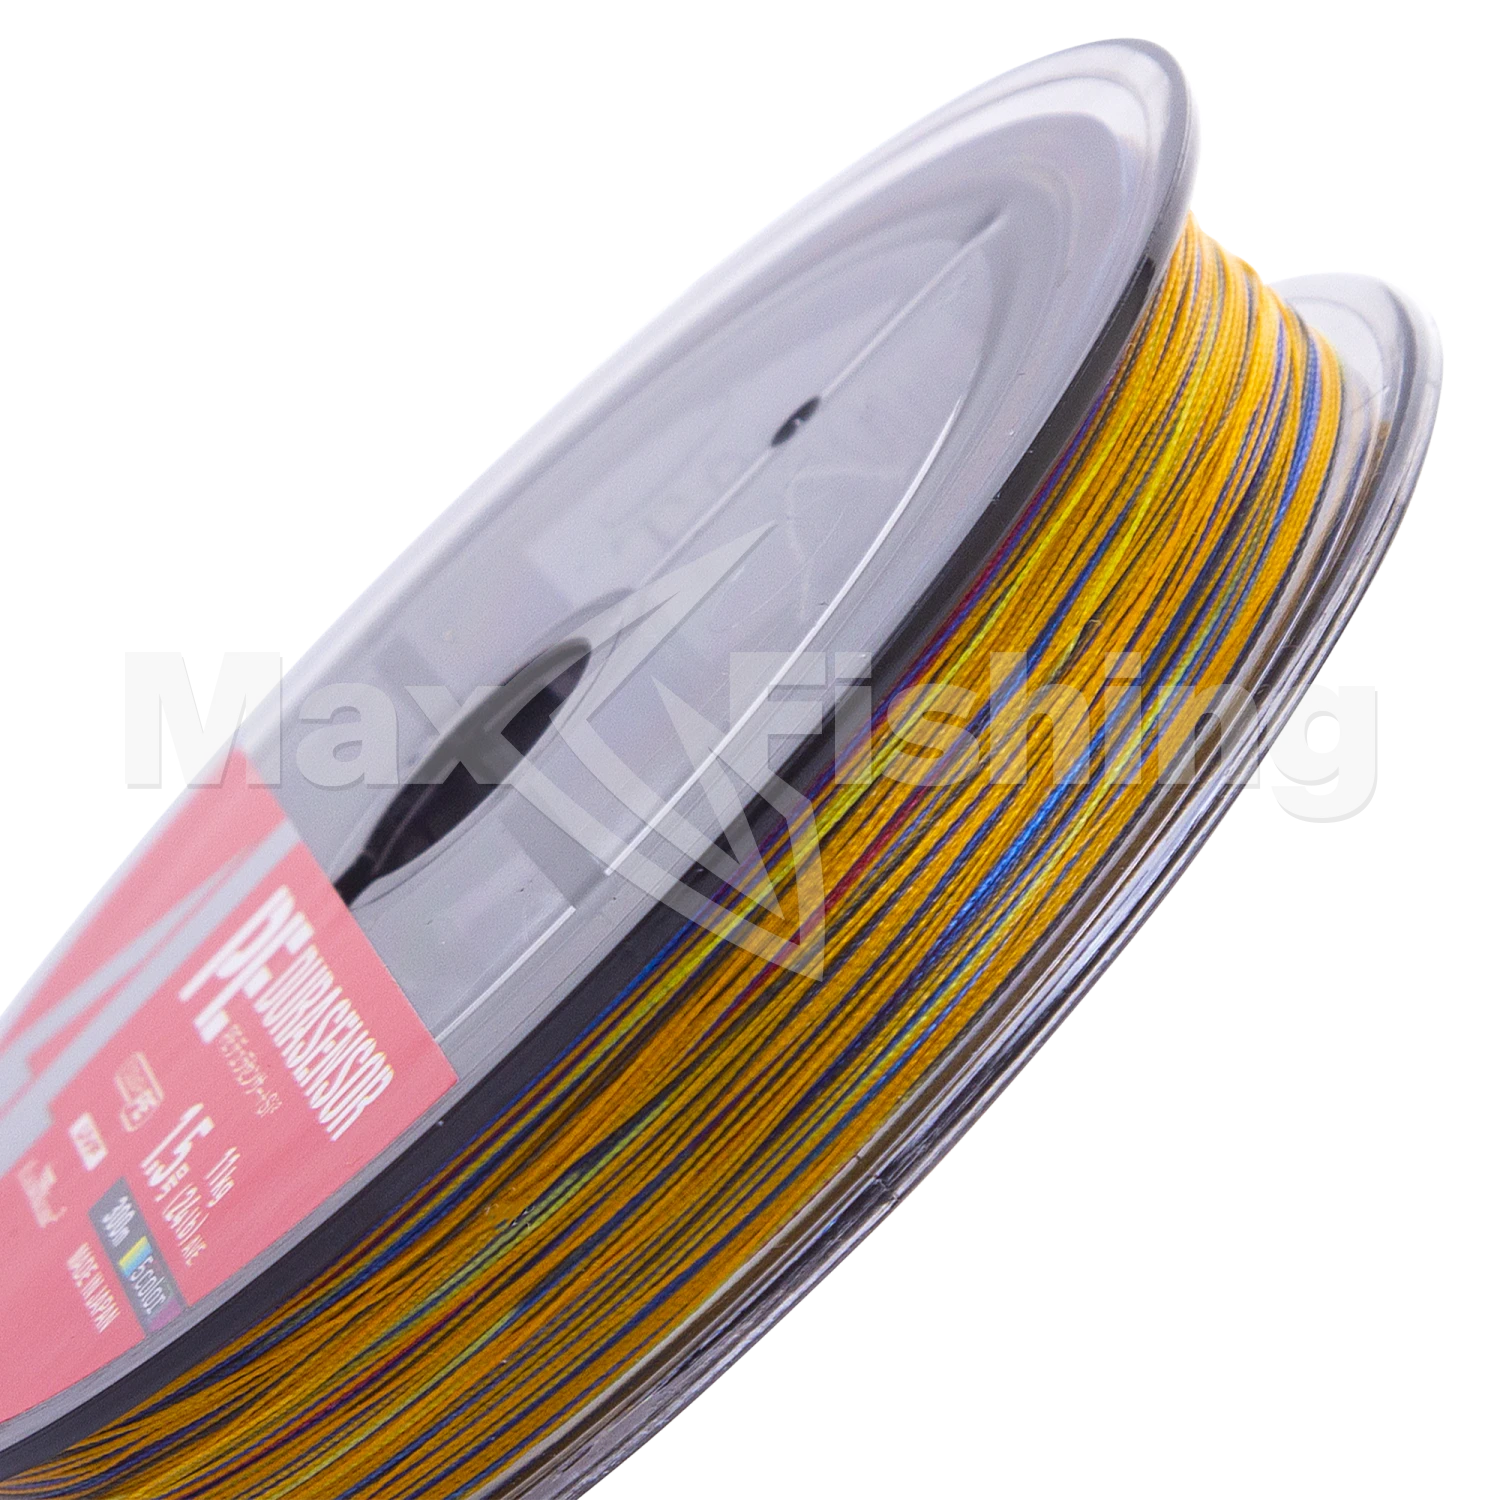 Шнур плетеный Daiwa UVF PE DuraSensor X4 +Si2 #1,5 0,205мм 300м (5color)